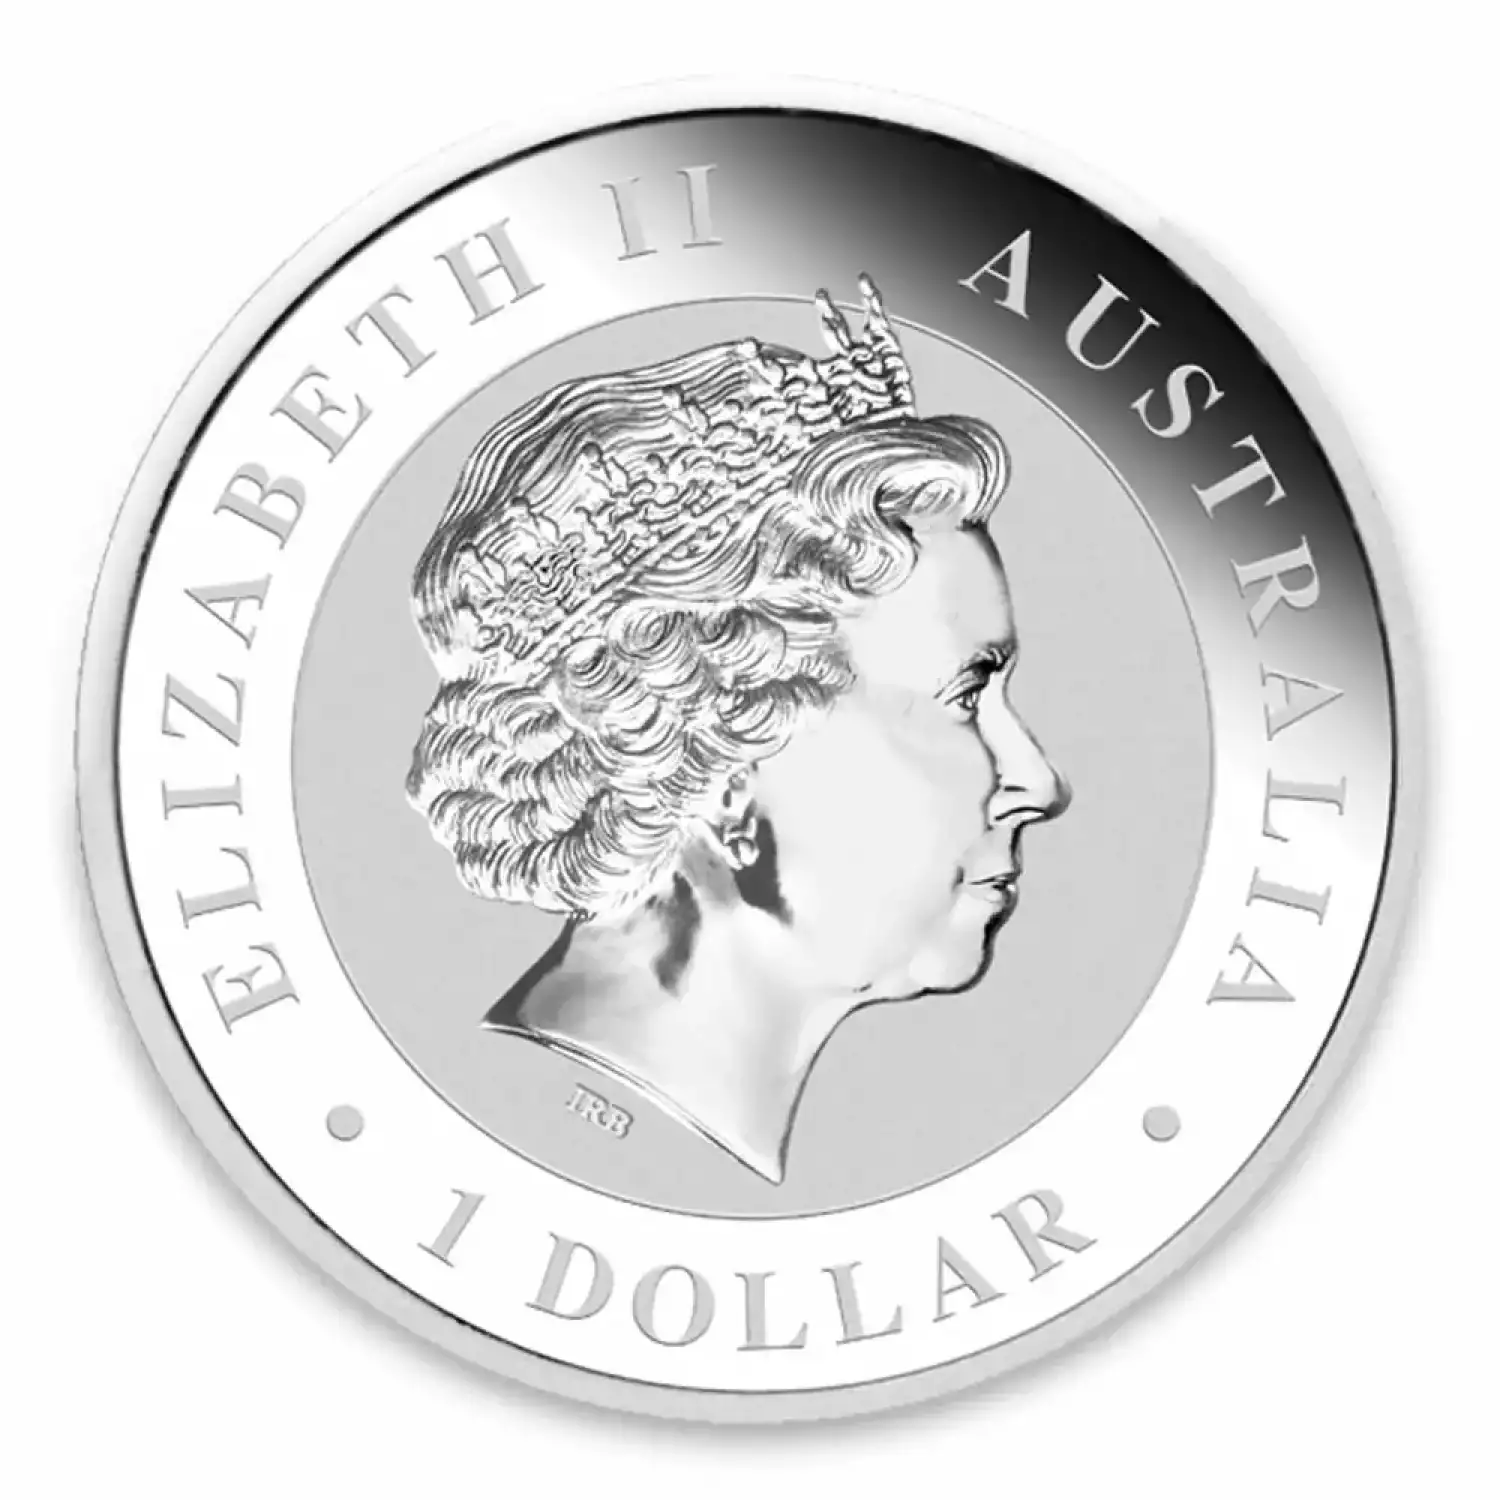 2012 1oz Australian Perth Mint Silver Kookaburra (2)